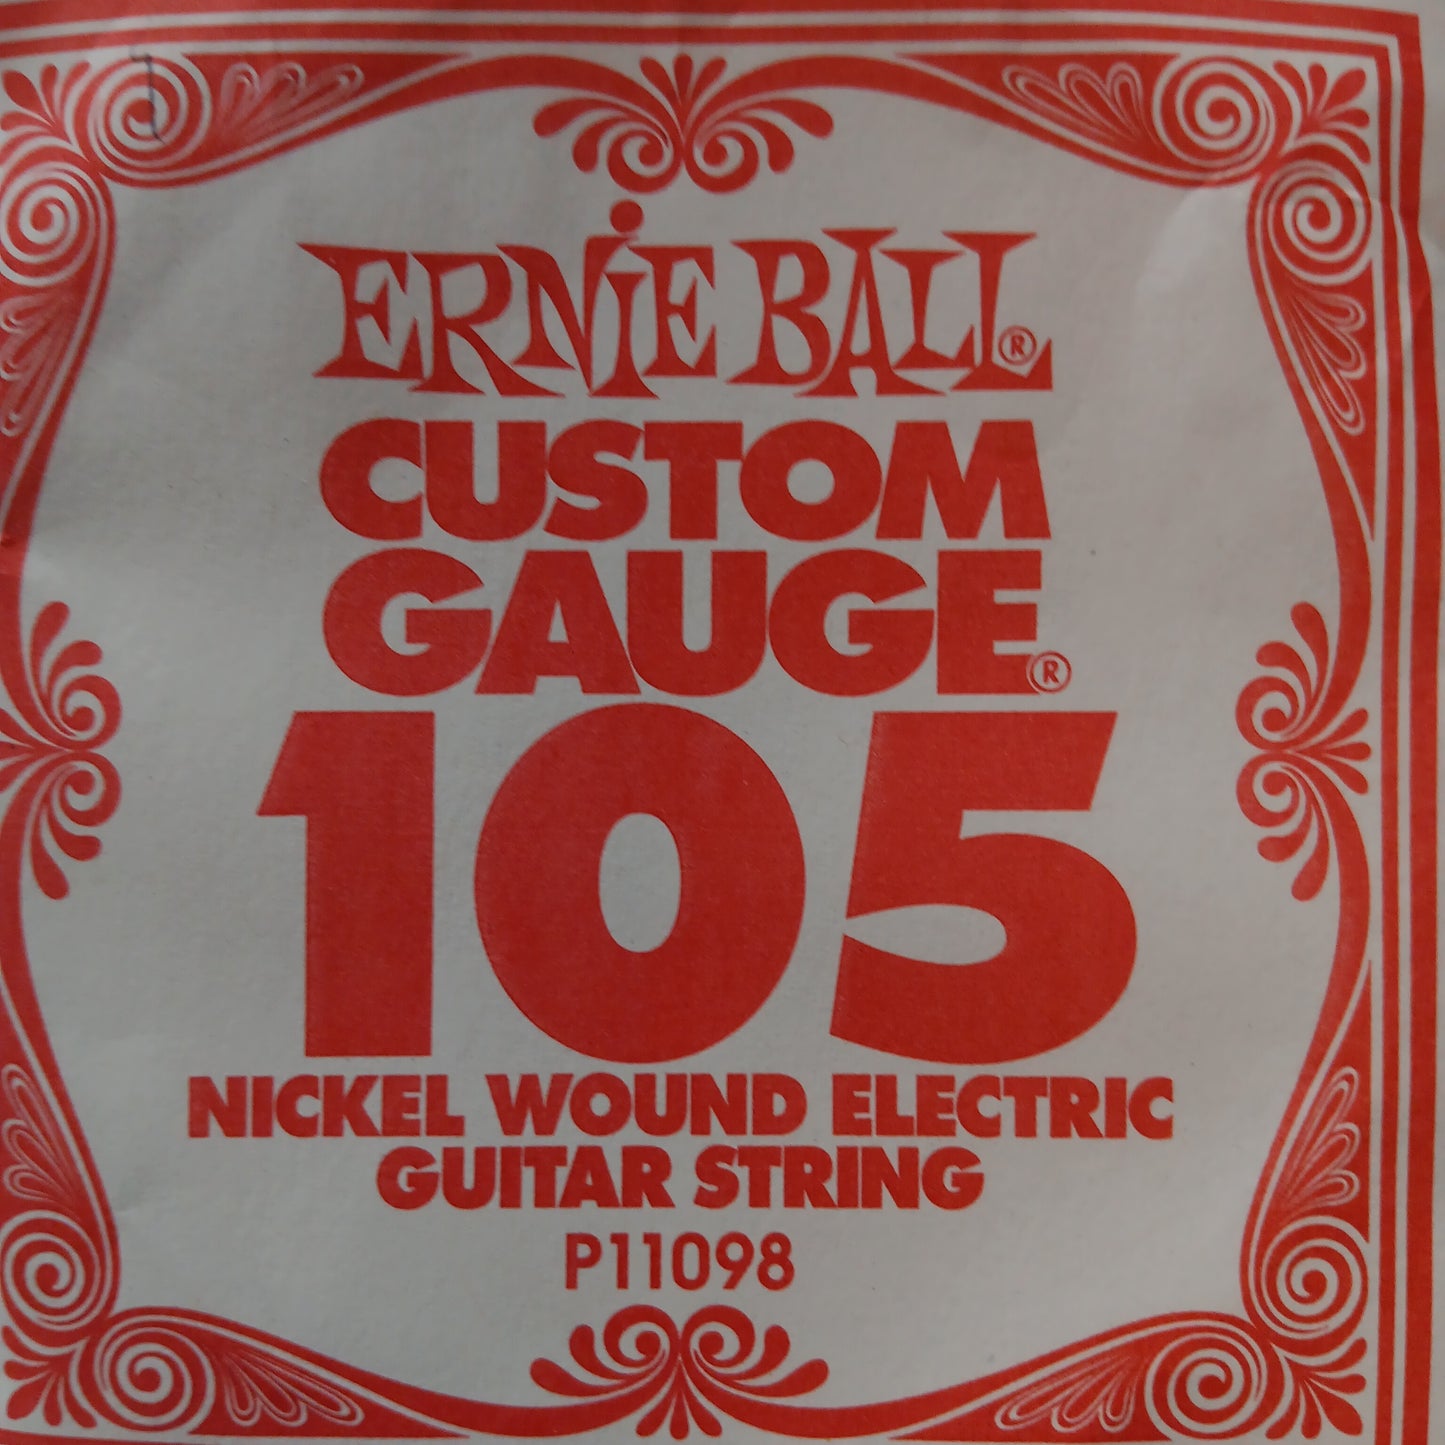 Ernie Ball Custom Gauge Nickel Wound Single Strings P11098/105
Gauge